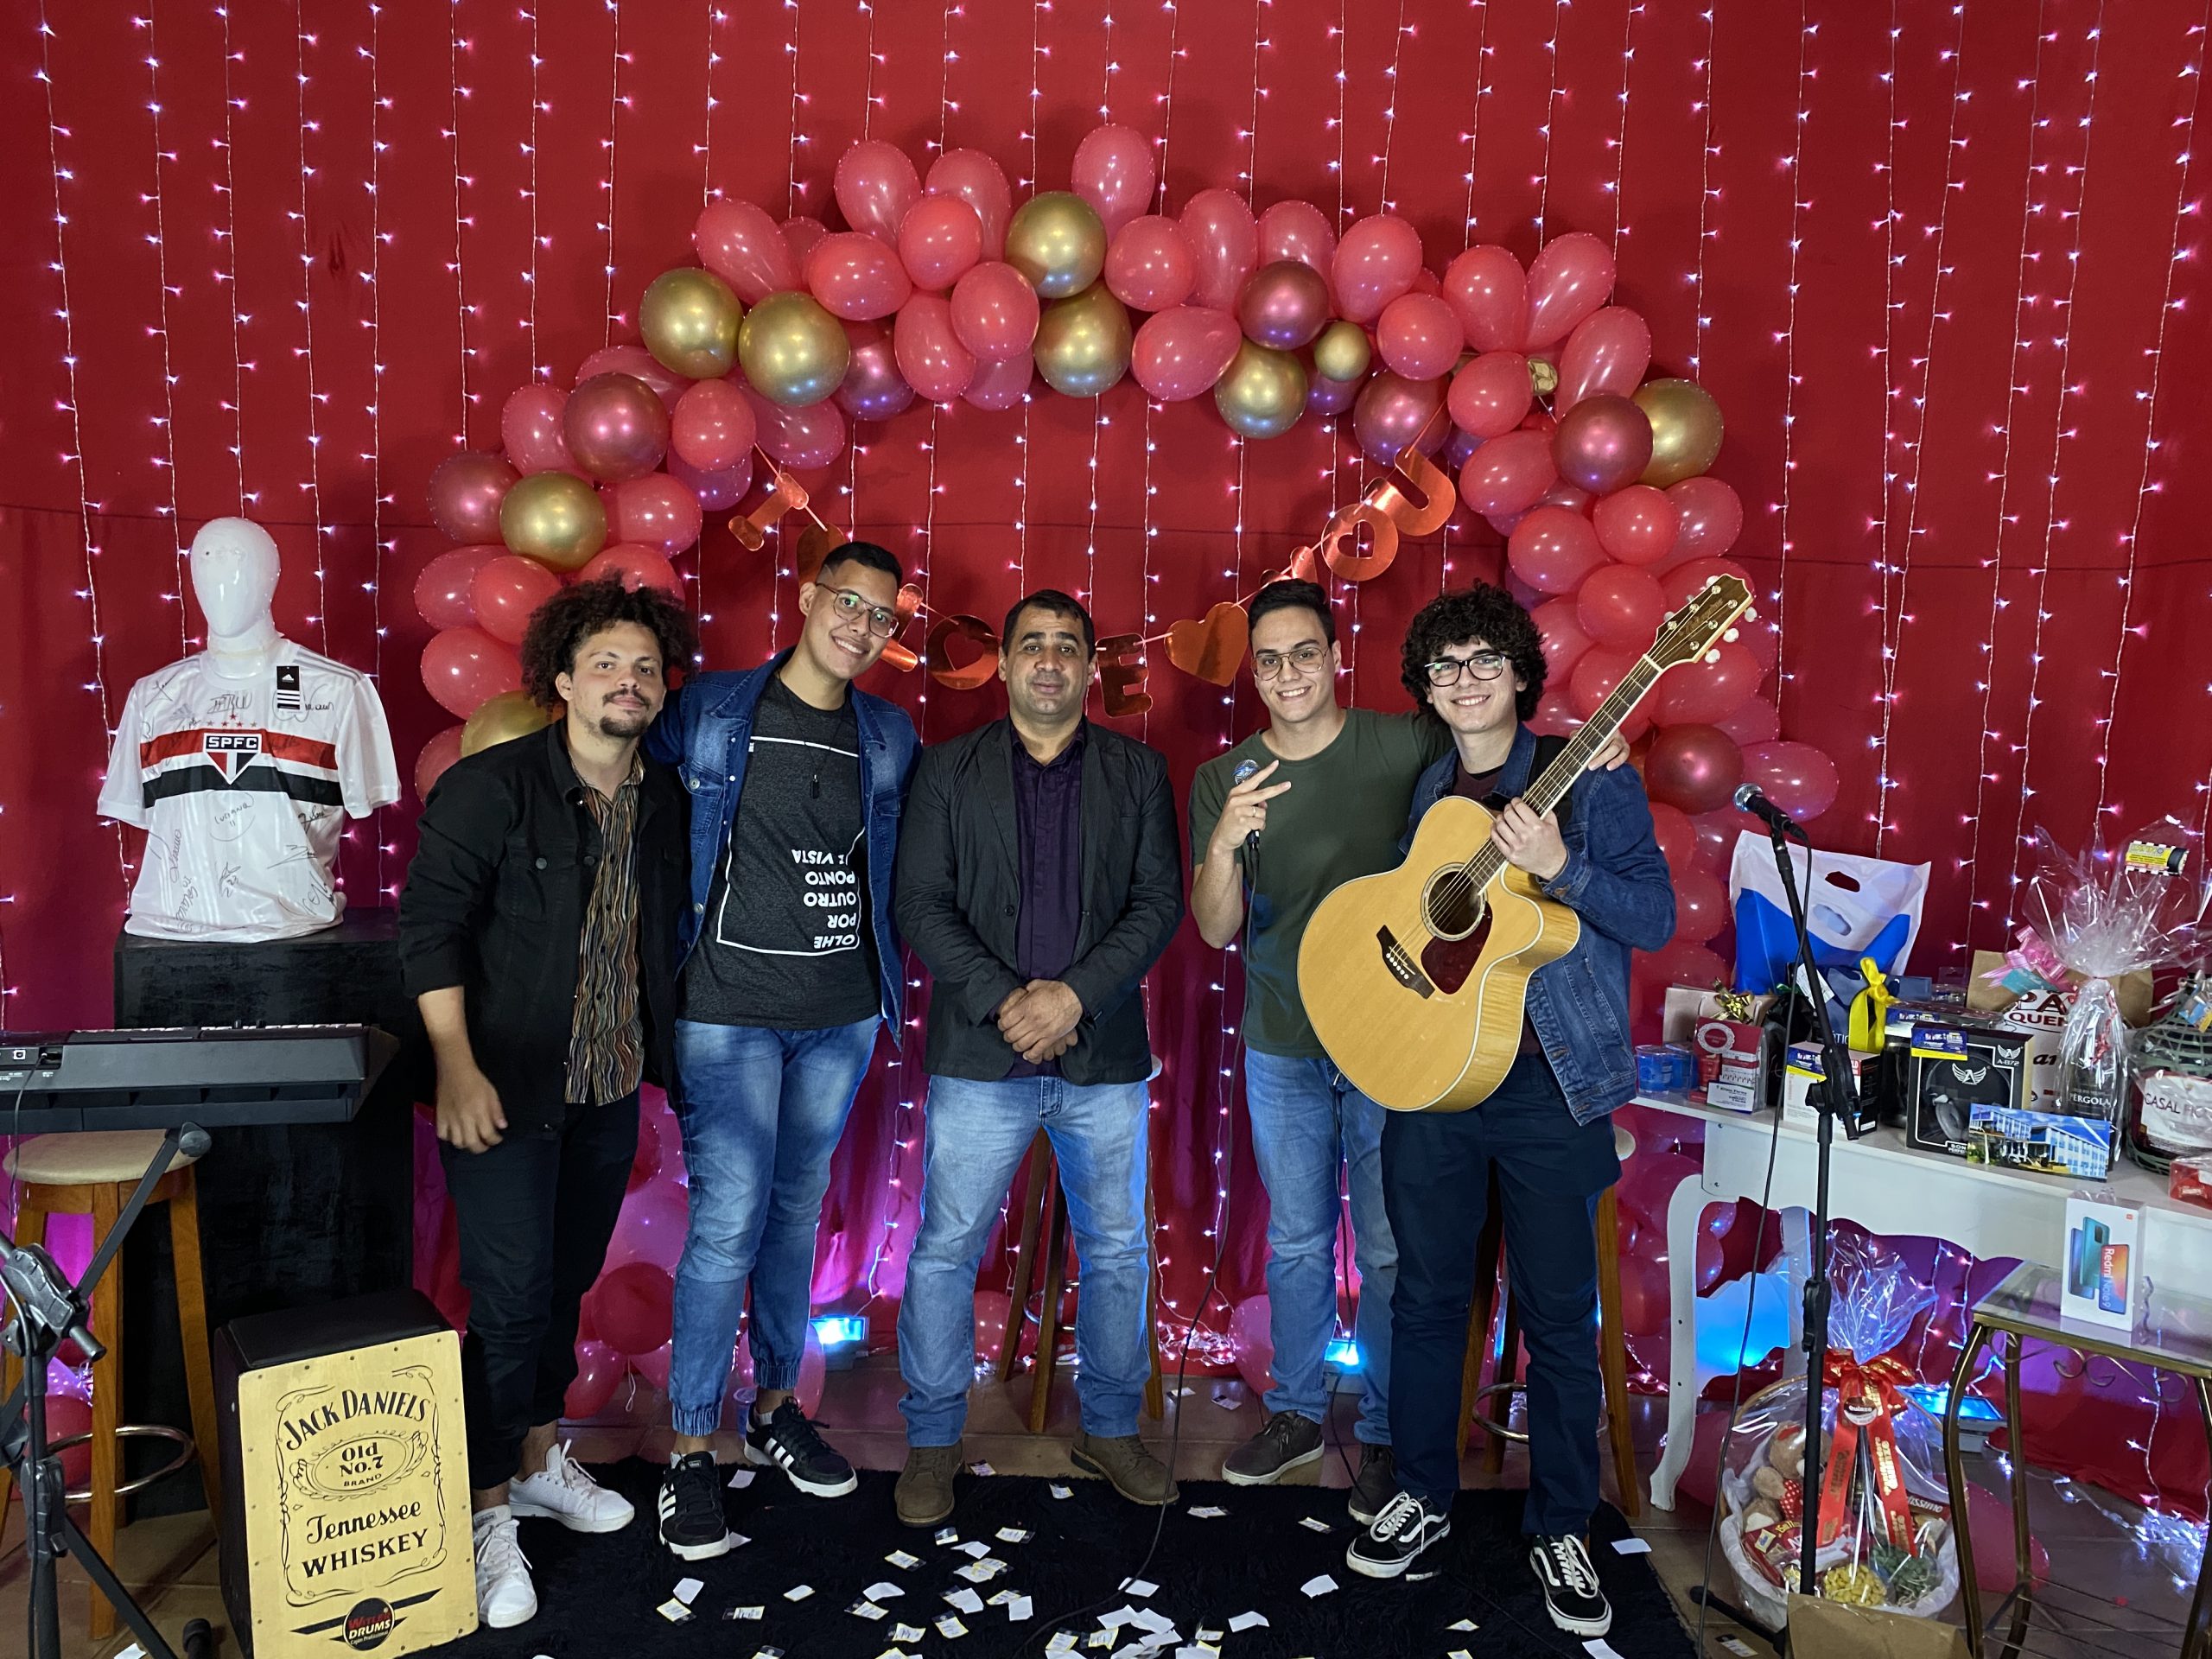 Prefeitura de Itararé (SP) realiza live com show de prêmios em comemoração ao Dia dos Namorados